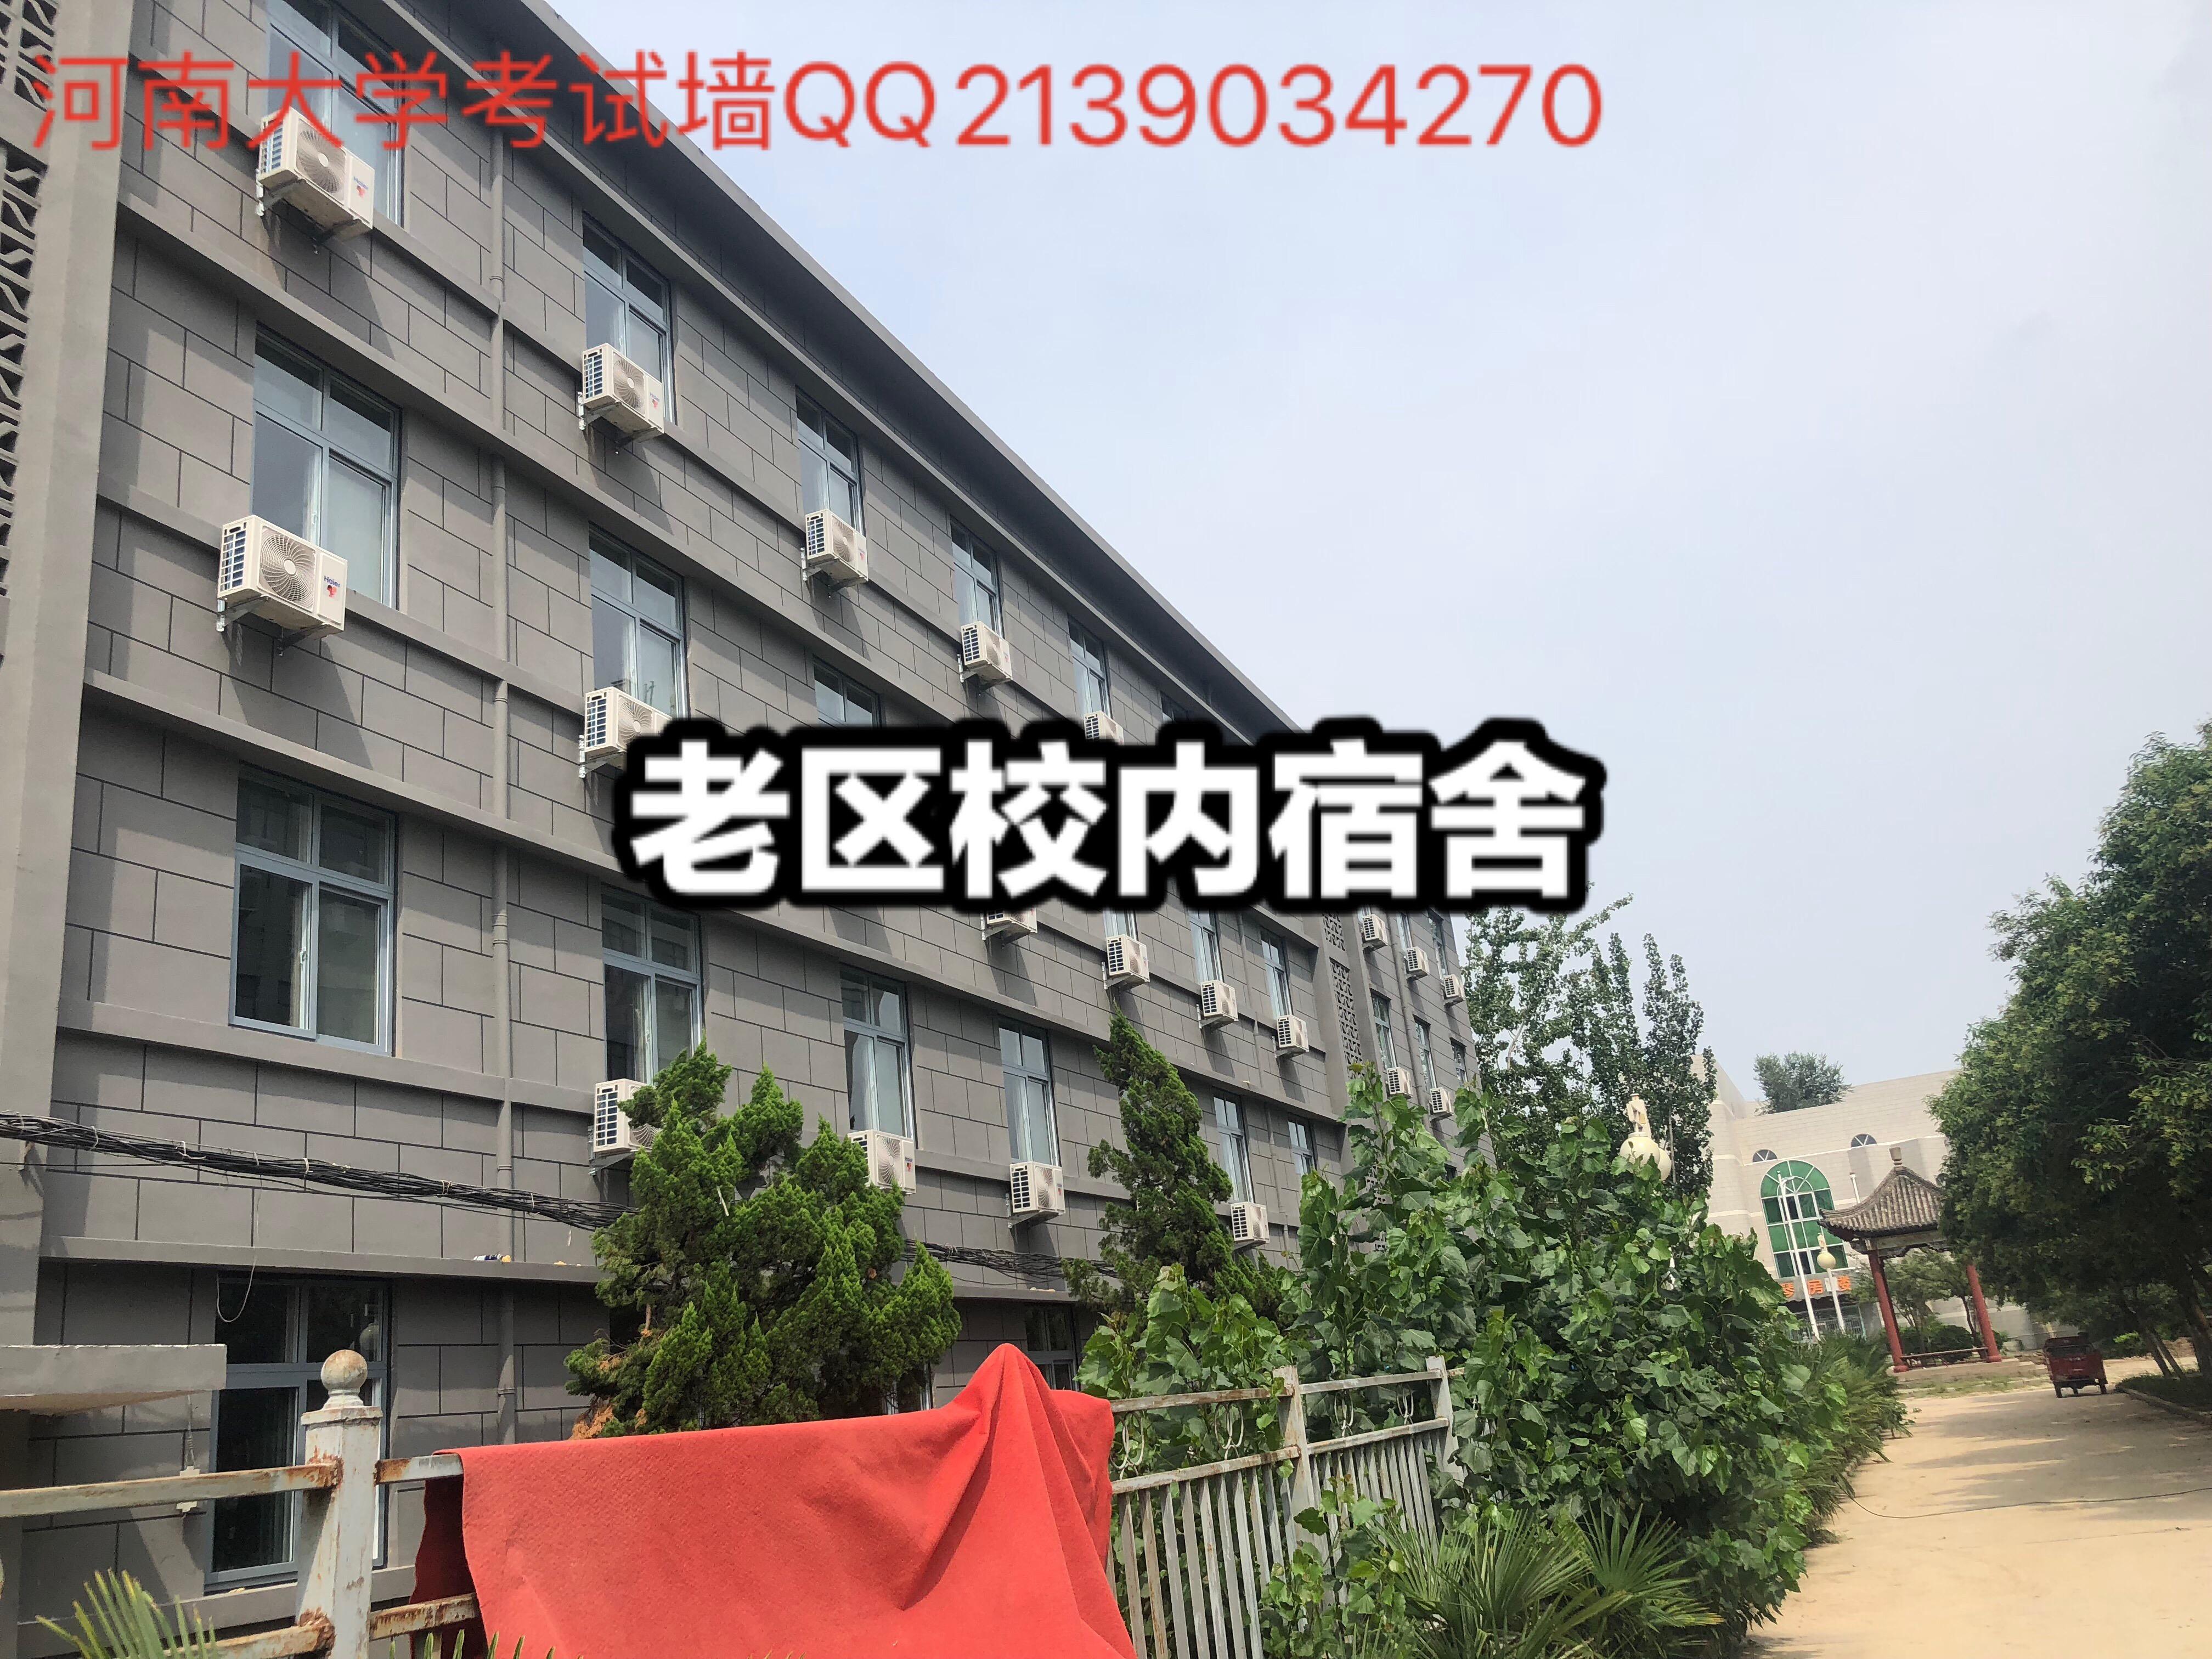 河南大学宿舍照片最全合集-2021 - 知乎